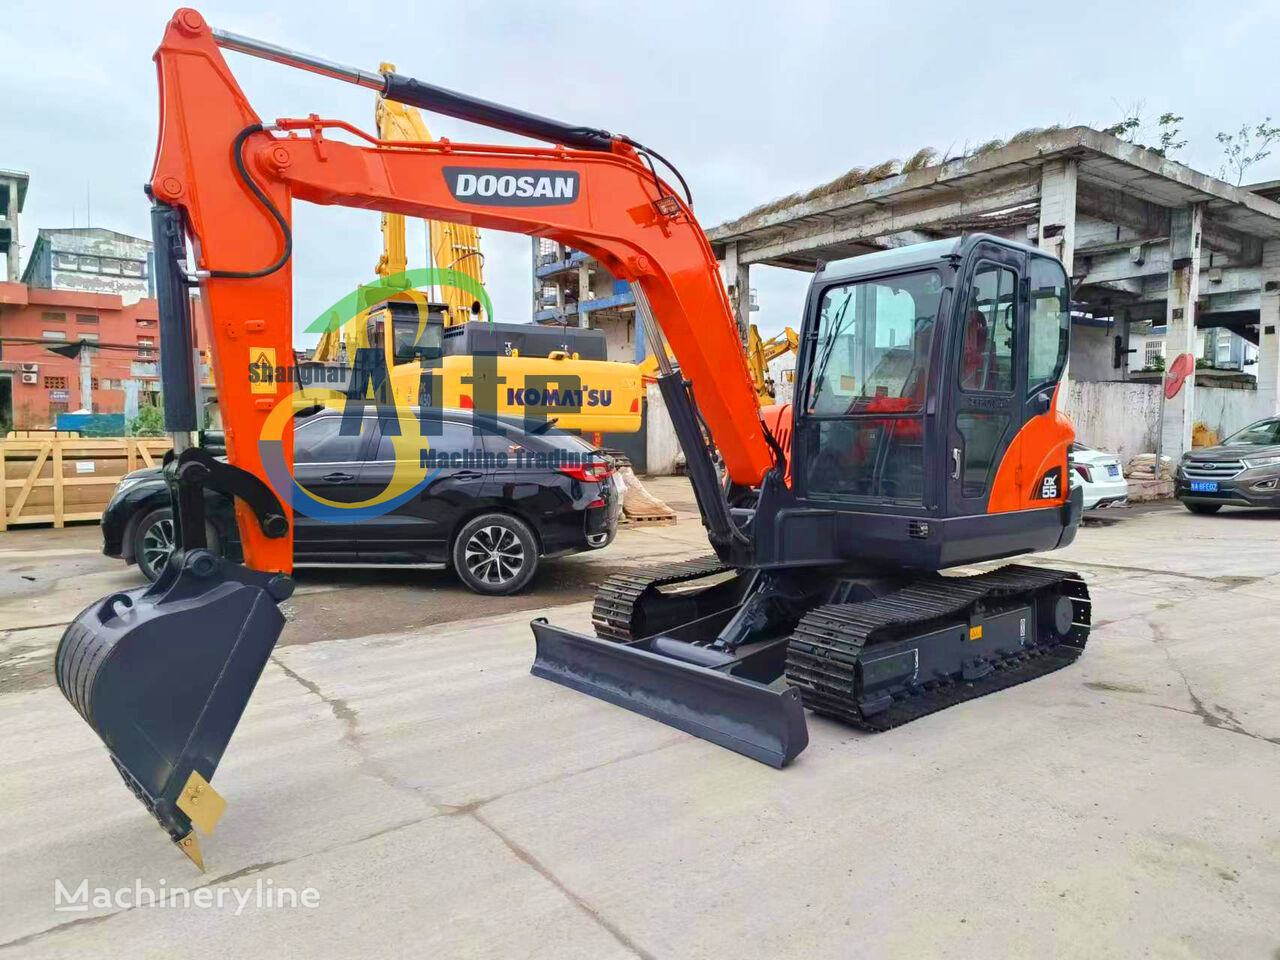 Doosan DX55 tracked excavator